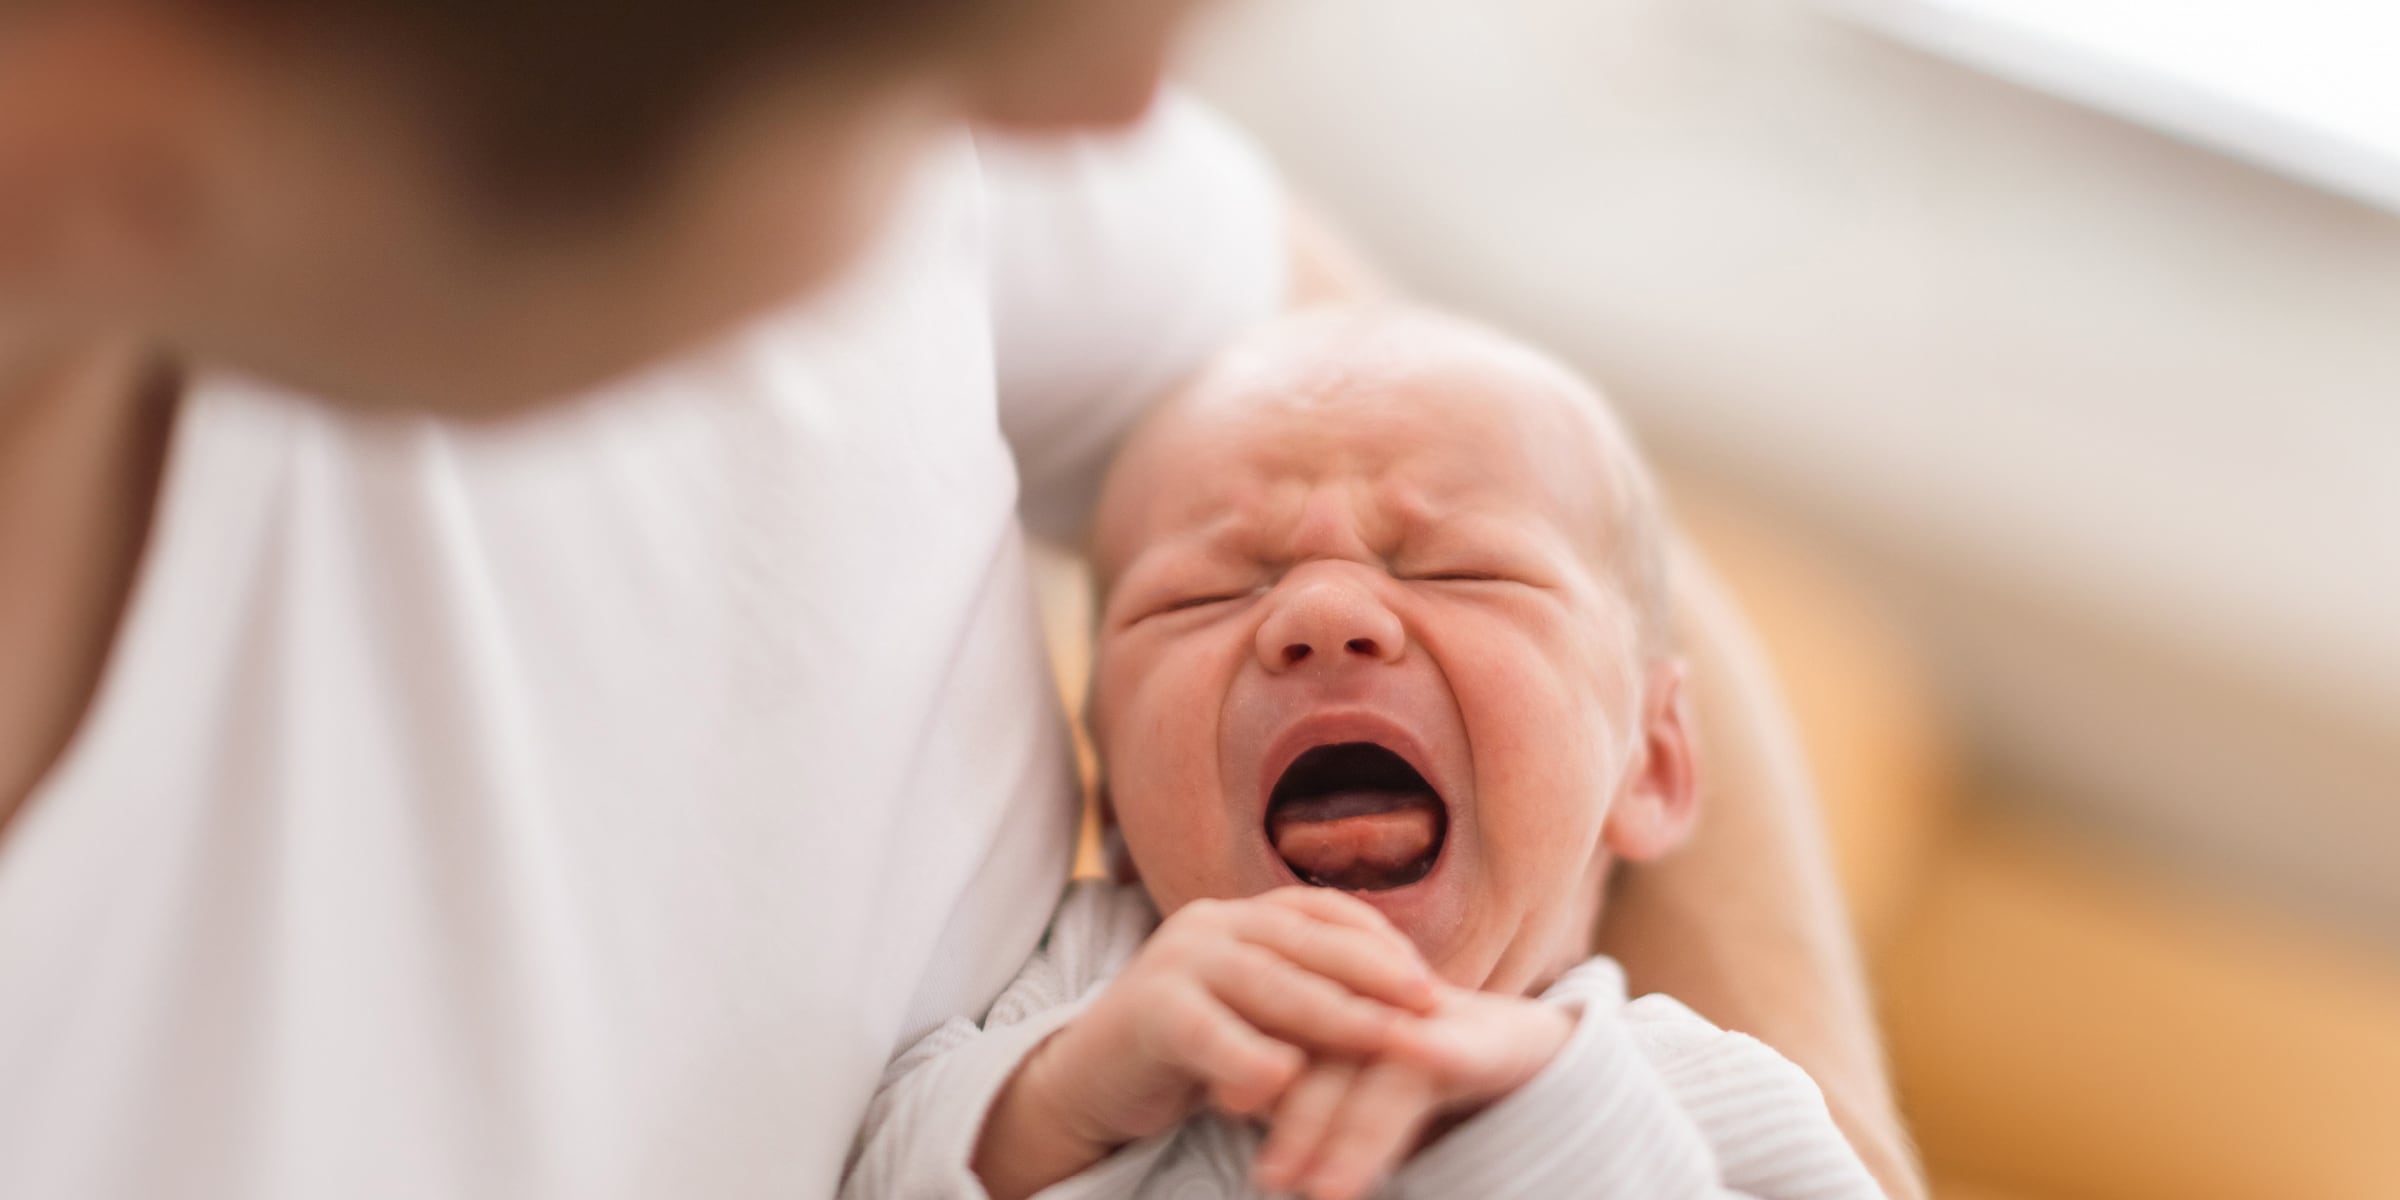 Syndrome du bébé secoué : avant de craquer, passez le relais !